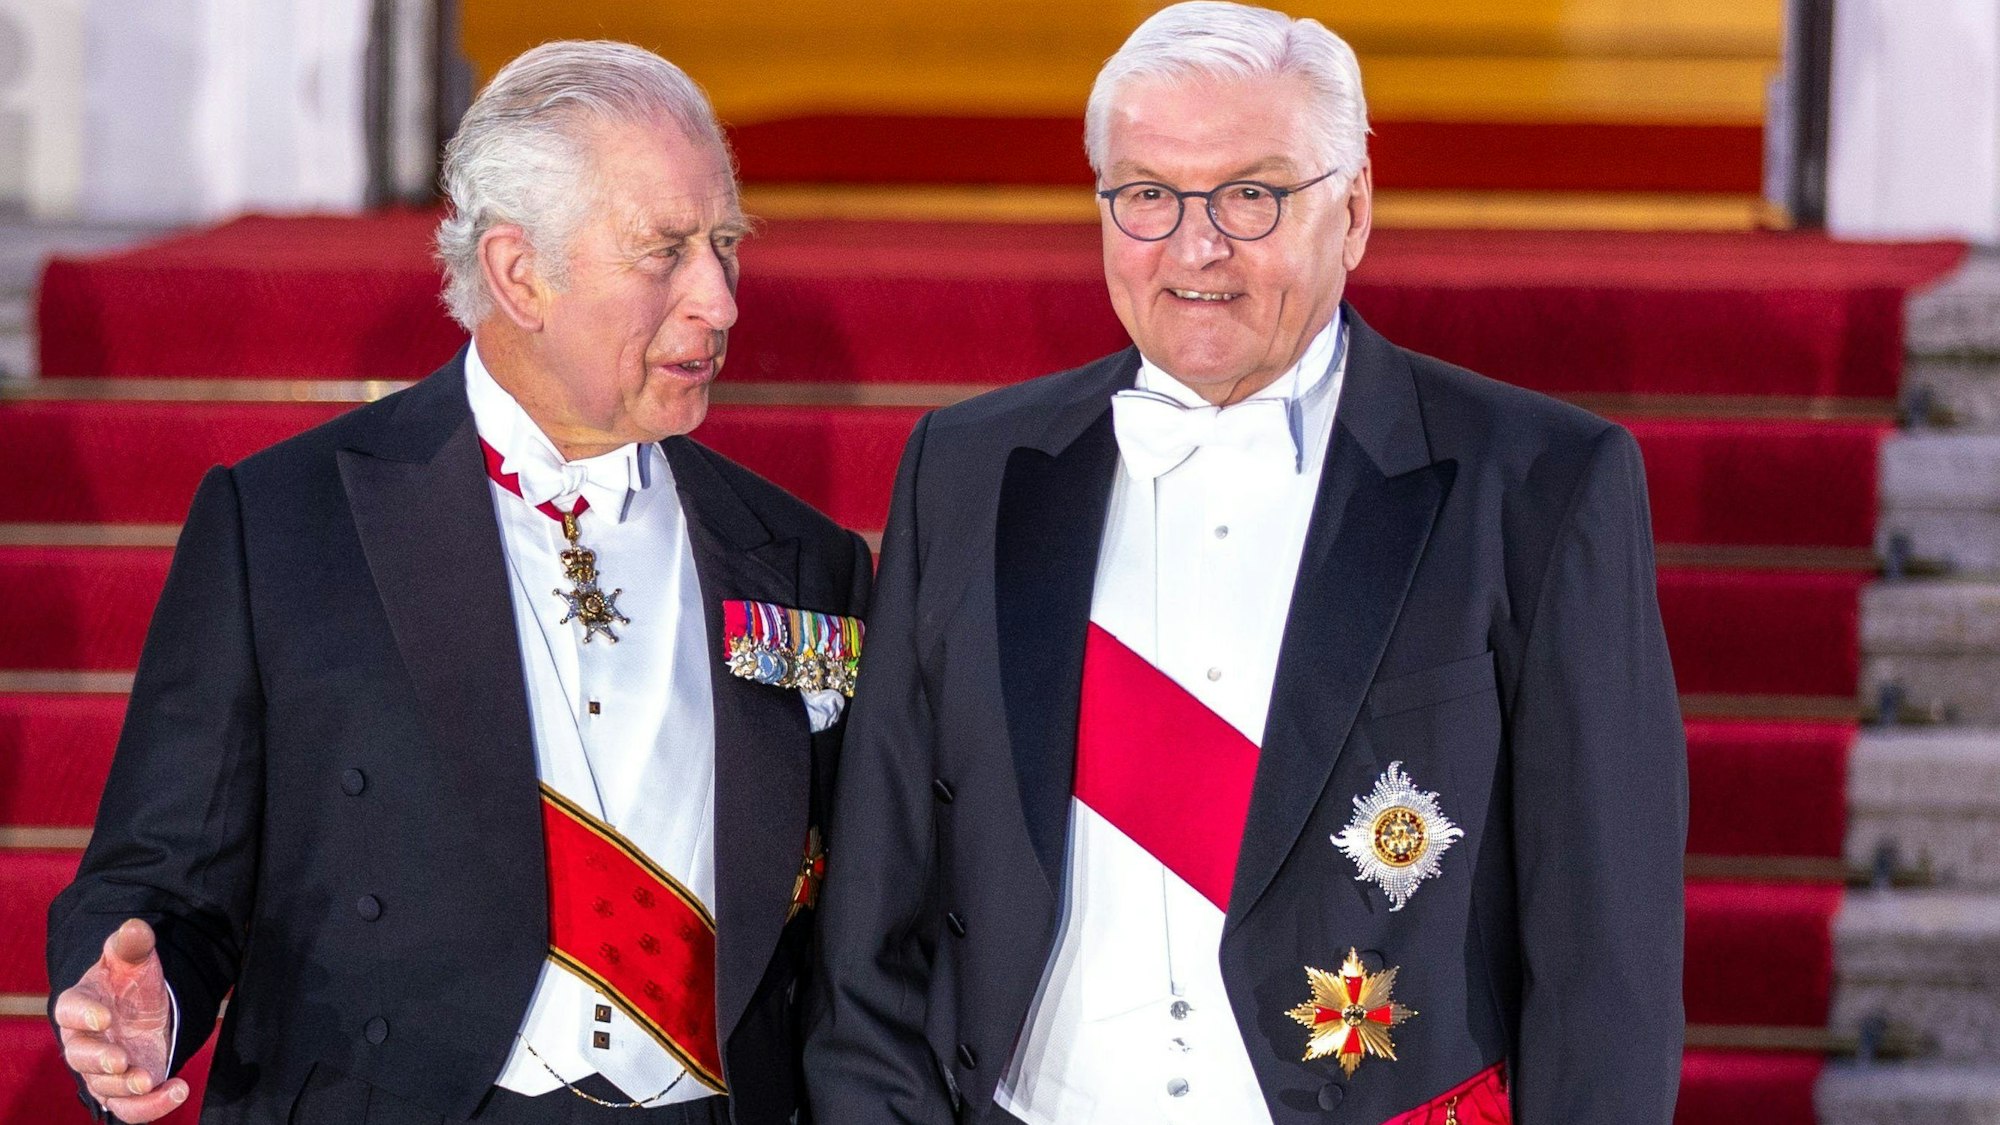 König Charles III. (l) und Bundespräsident Frank-Walter Steinmeier stehen vor Beginn des Staatsbanketts vor dem Schloss Bellevue. Steinmeier wird an der Krönung von Charles III. am 6. Mai 2023 in London teilnehmen. Das teilten das Bundespräsidialamt und die deutsche Botschaft in London am 11.04.2023 mit.